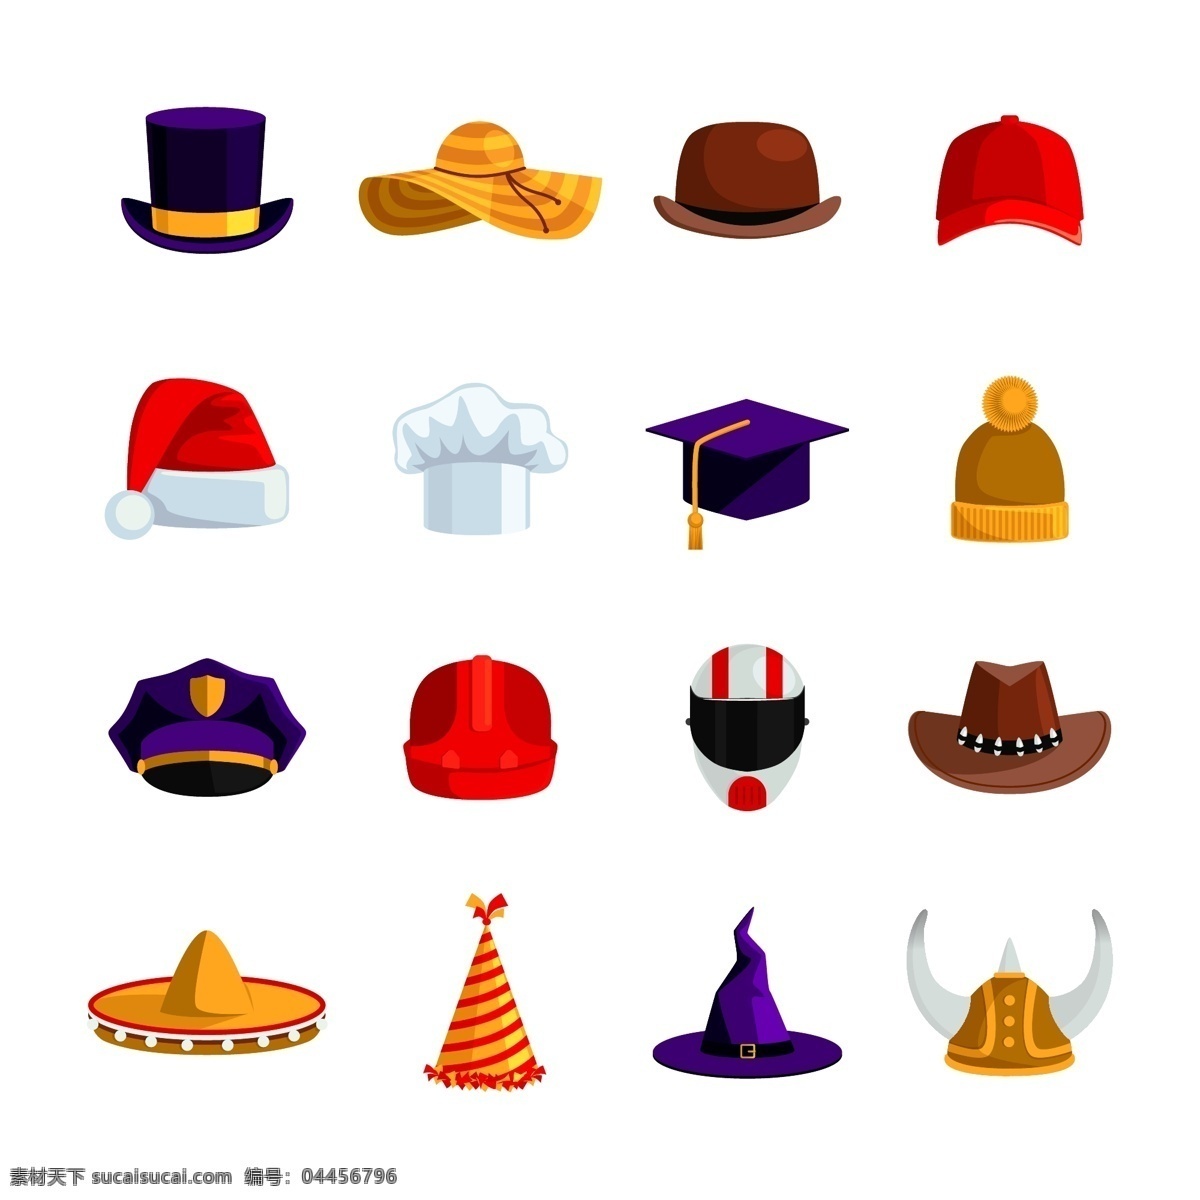 帽子图片 帽子 卡通帽子 手绘帽子 饰品 插图 插画 ai矢量